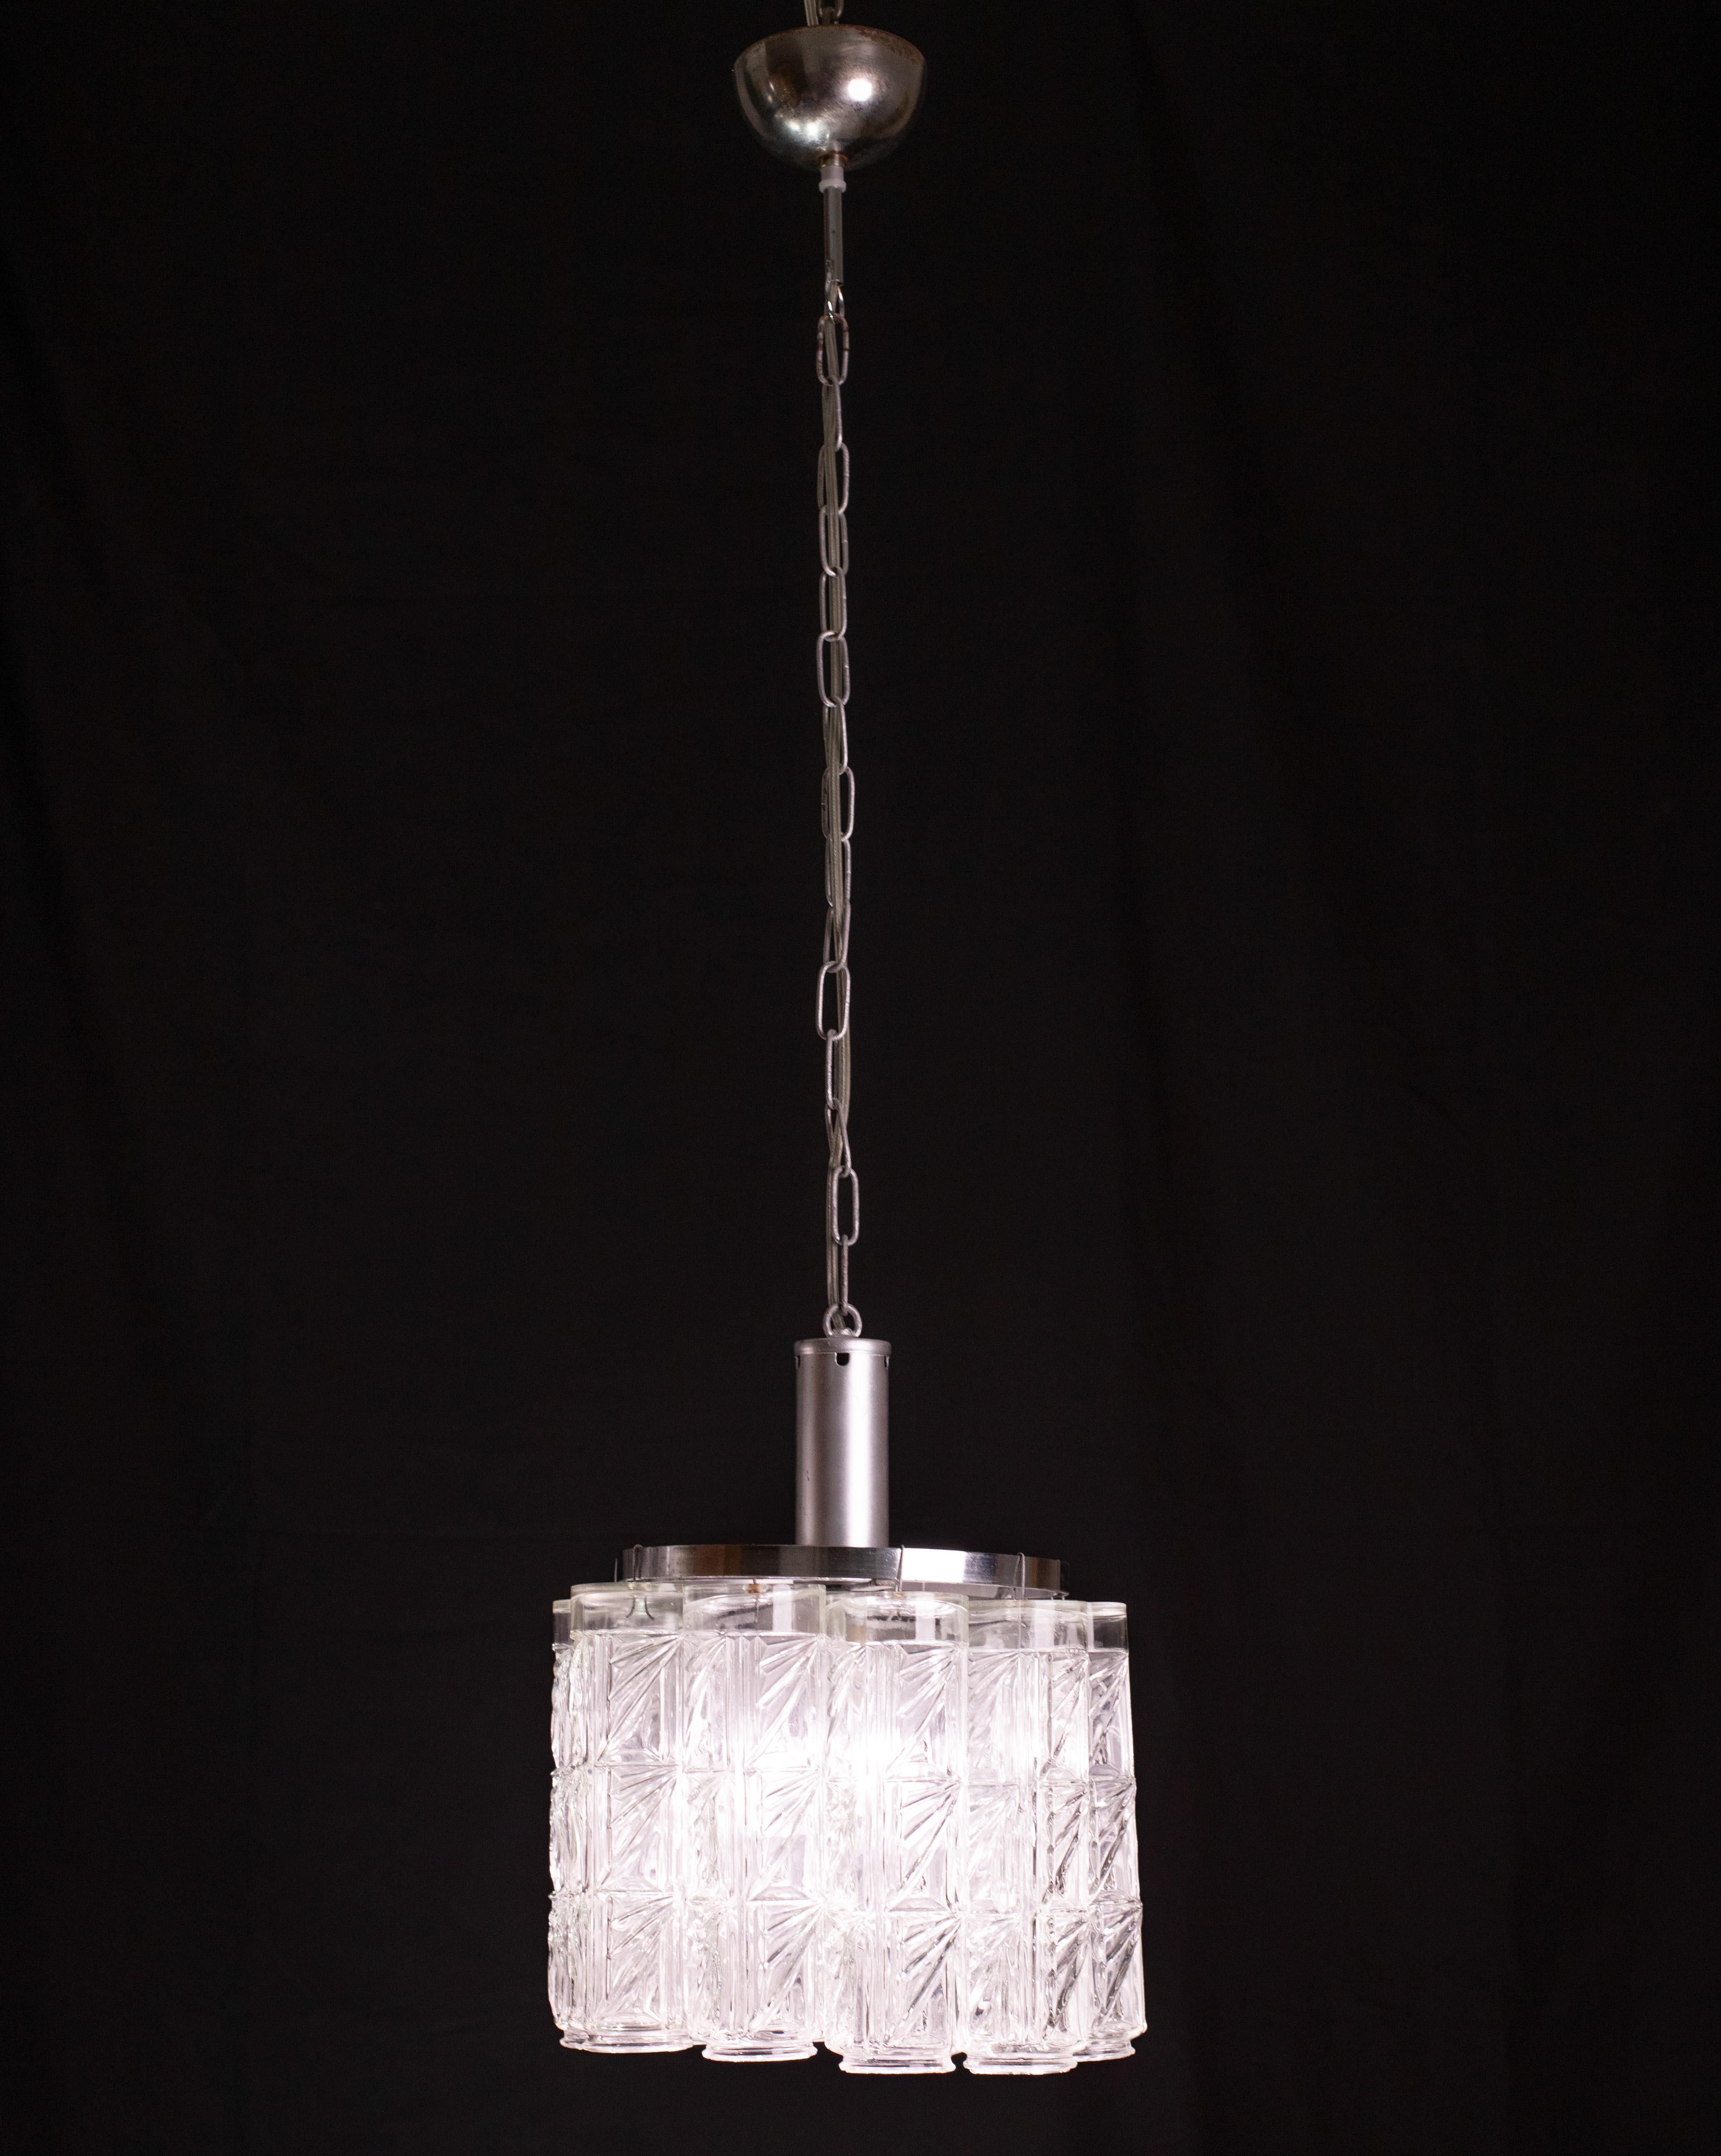 Lustre Murano des années 1960 10 billes transparentes.
Le lustre est actuellement équipé d'une seule lumière, mais il est possible de le recâbler pour l'adapter aux normes américaines.
La hauteur totale du lustre est de 105 centimètres avec la